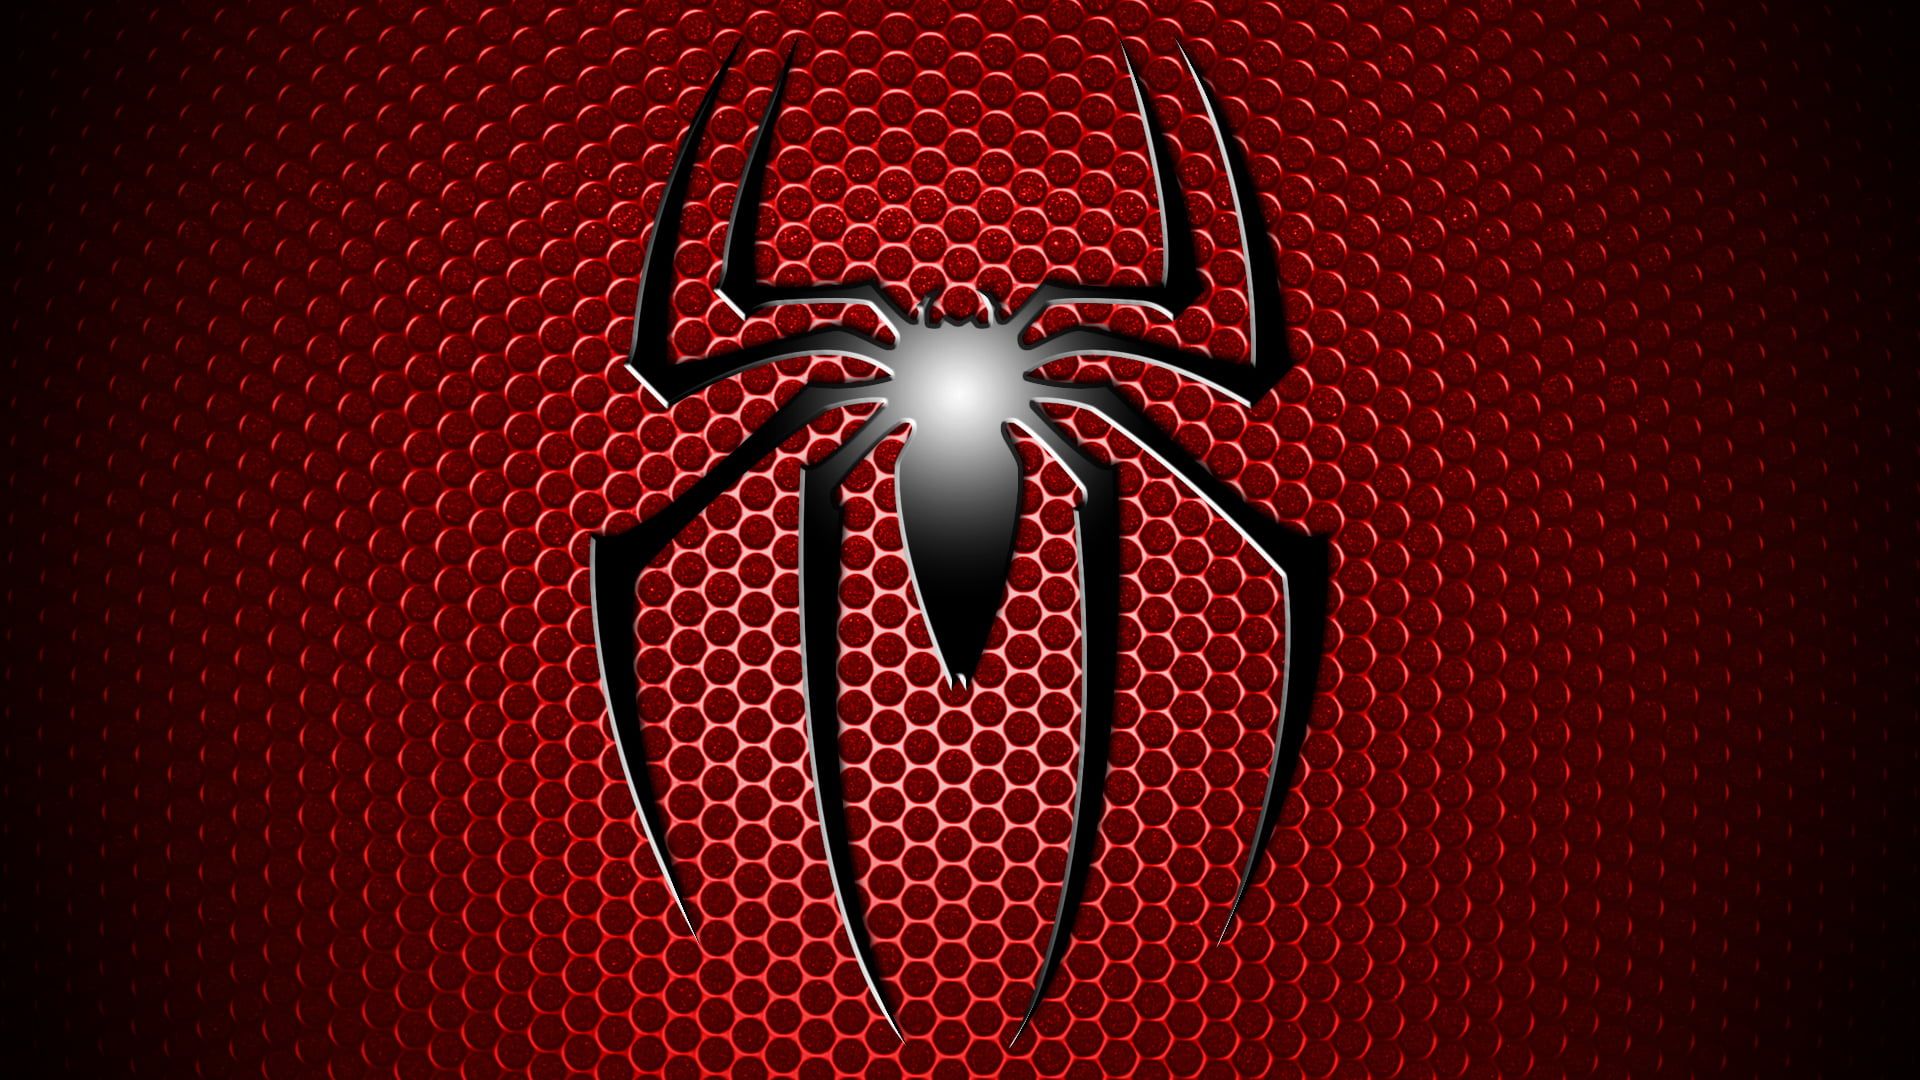 Spider Man Logo Digital Wallpaper #red #logo #comic #Spiderman P # Wallpaper #hdwallpaper #desktop. Spiderman Image, Digital Wallpaper, HD Wallpaper 1080p